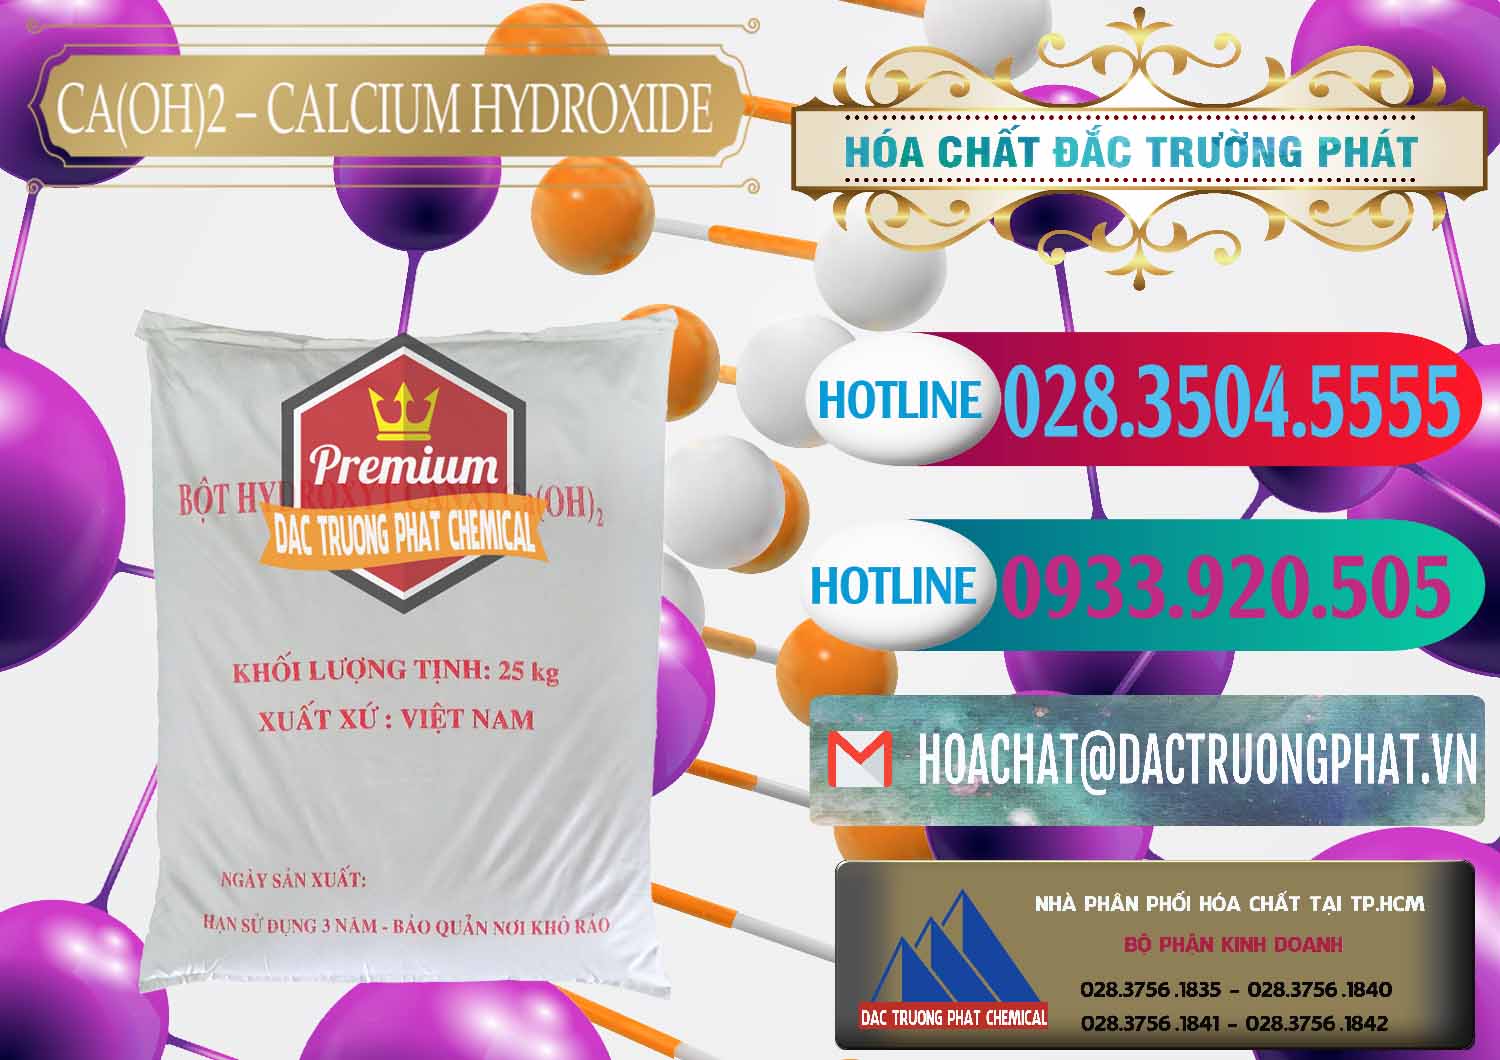 Công ty chuyên bán ( phân phối ) Ca(OH)2 - Calcium Hydroxide Việt Nam - 0186 - Công ty chuyên cung cấp & kinh doanh hóa chất tại TP.HCM - truongphat.vn